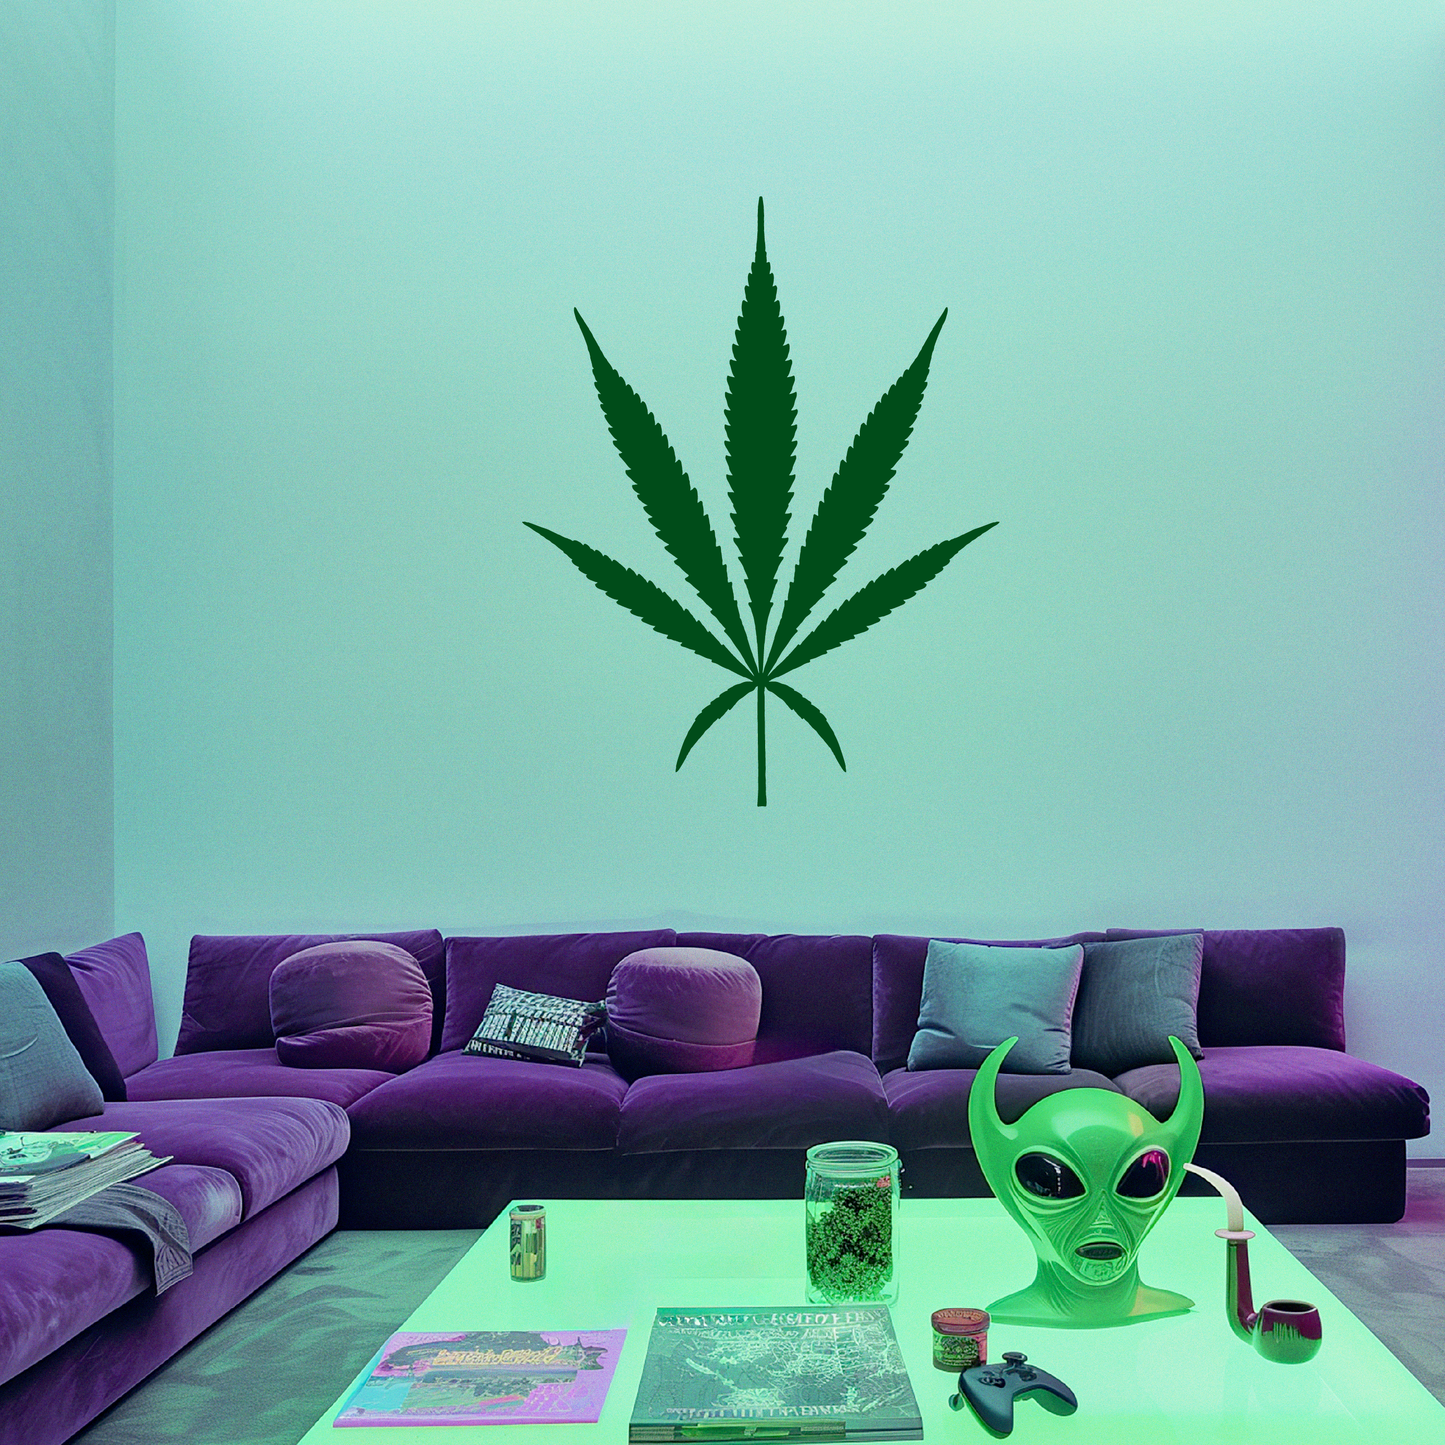 Big 'Ol Cannabis Leaf